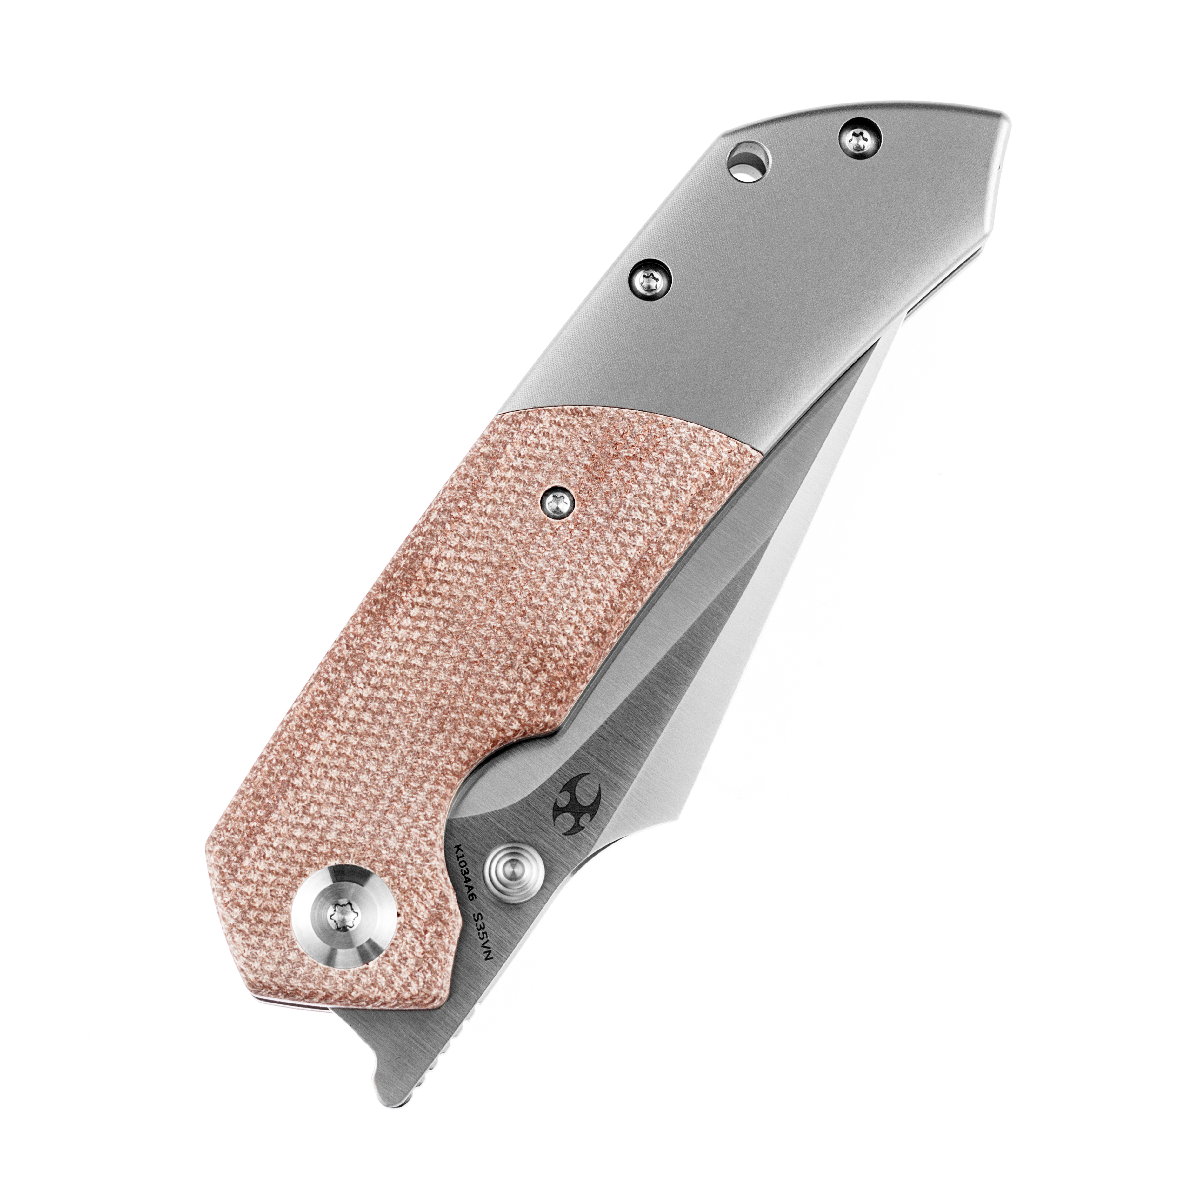 Kansept Fenrir K1034A6 Flipper Knife CPM-S35VN Blade Micarta Titanium Handle